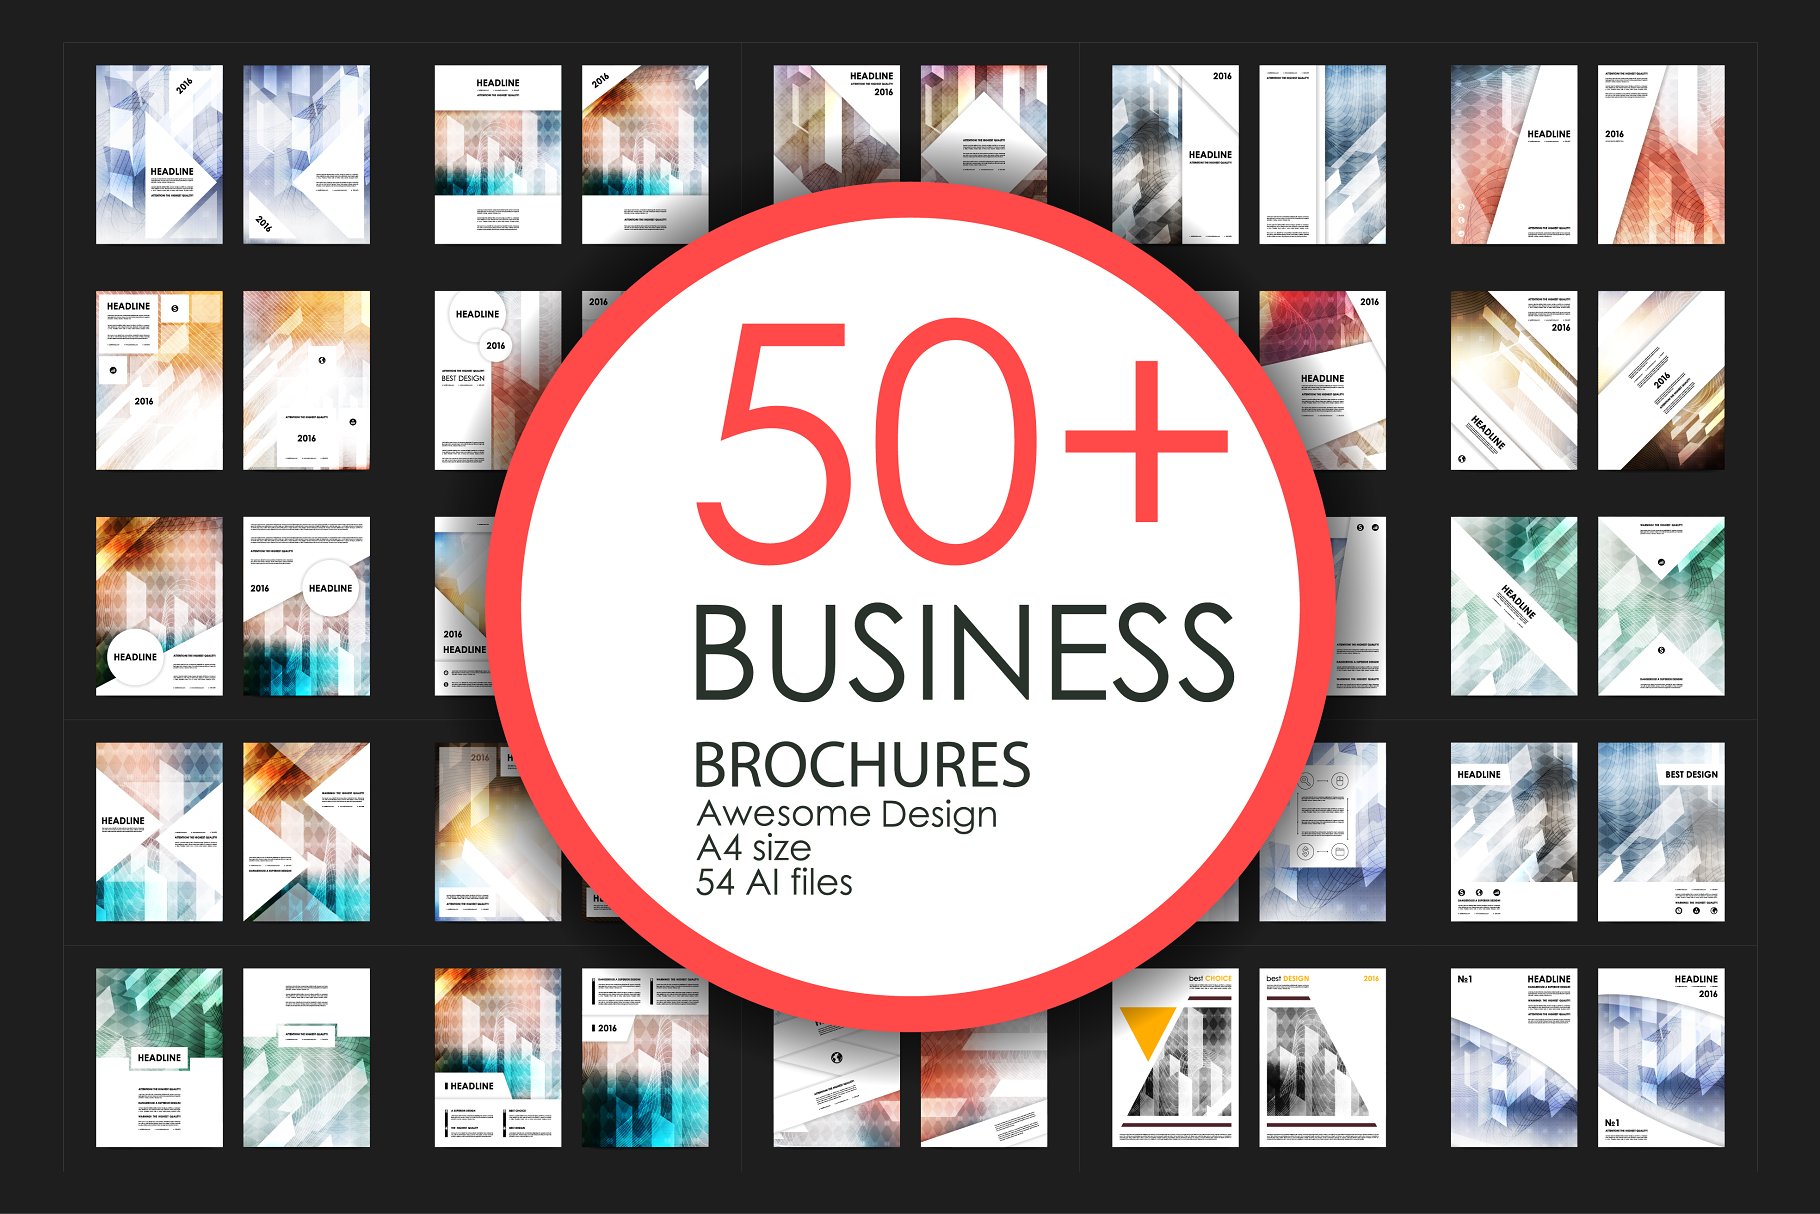 50+企业商业主题宣传小册子模板合集 50+ Business Brochures Bundle插图(55)